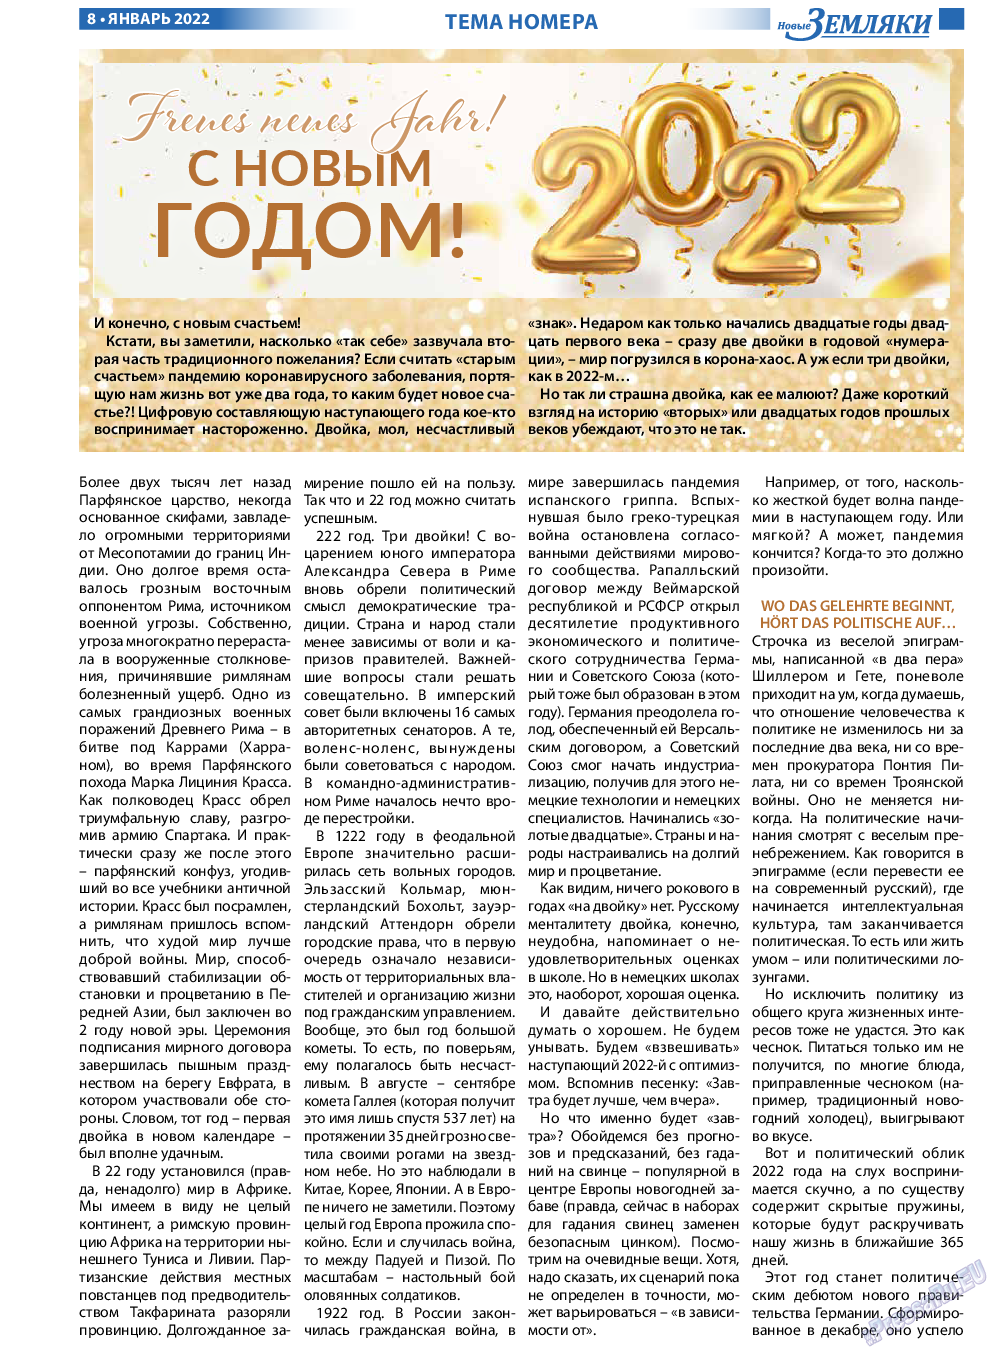 Новые Земляки, газета. 2022 №1 стр.8